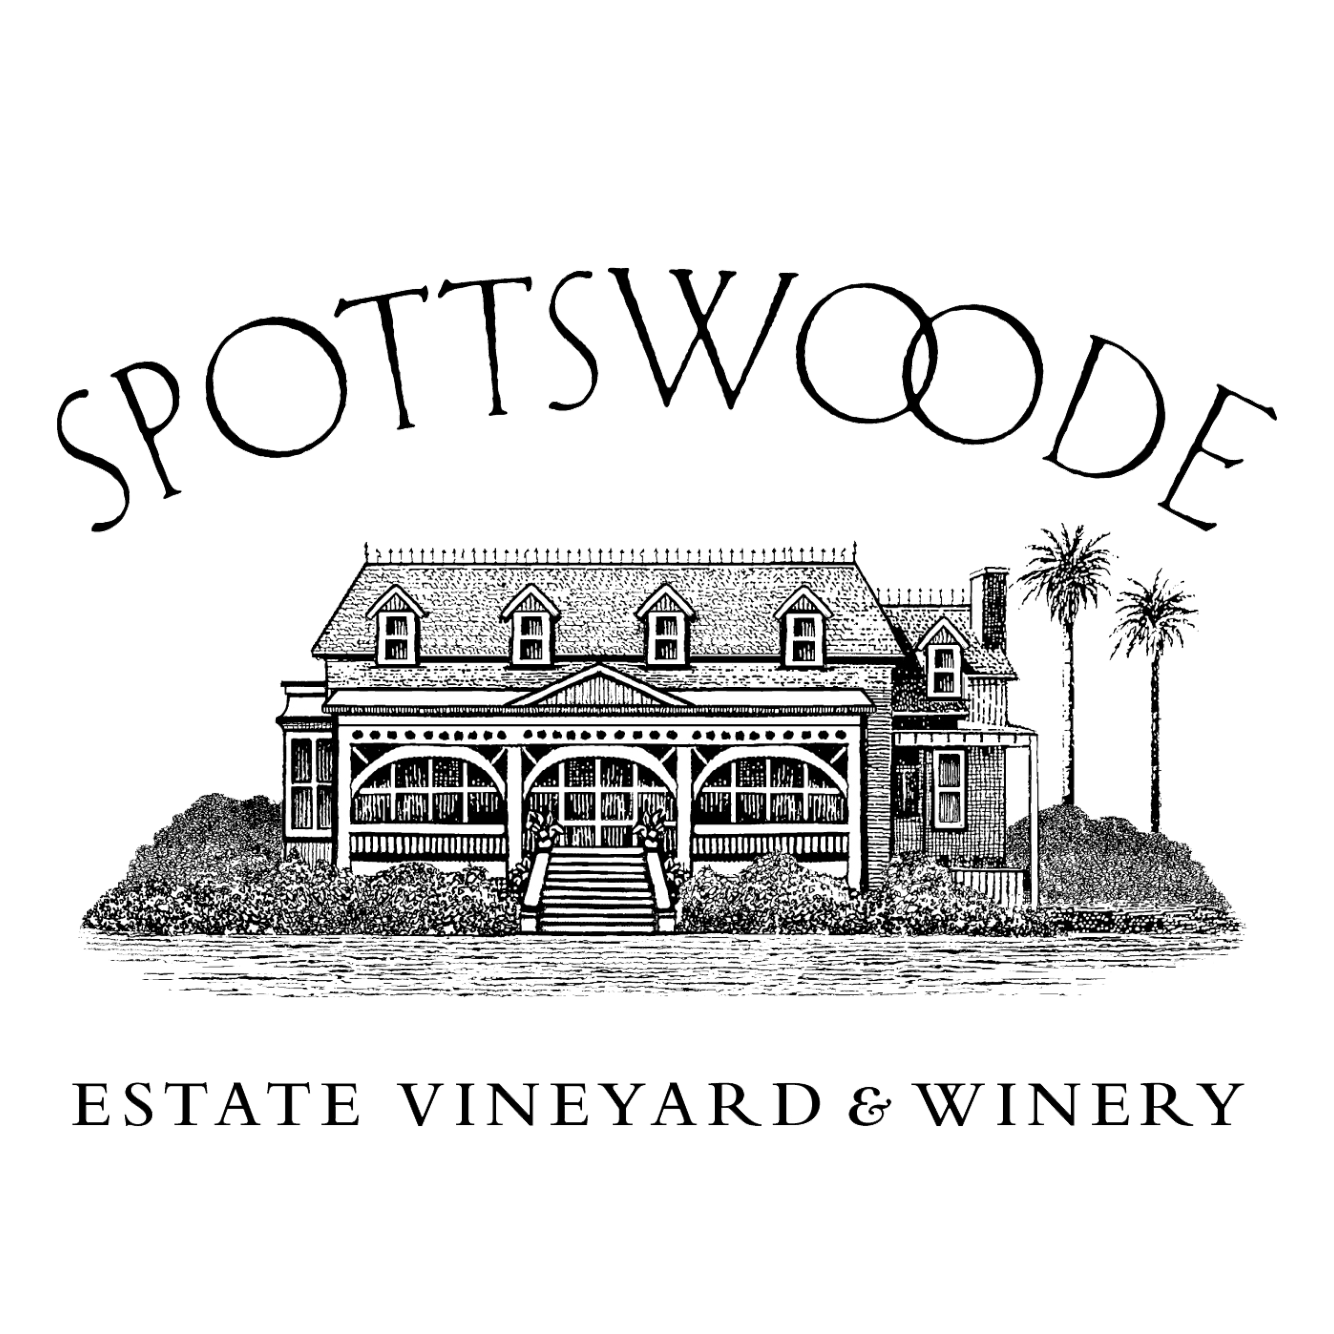 Spottswoode Wines